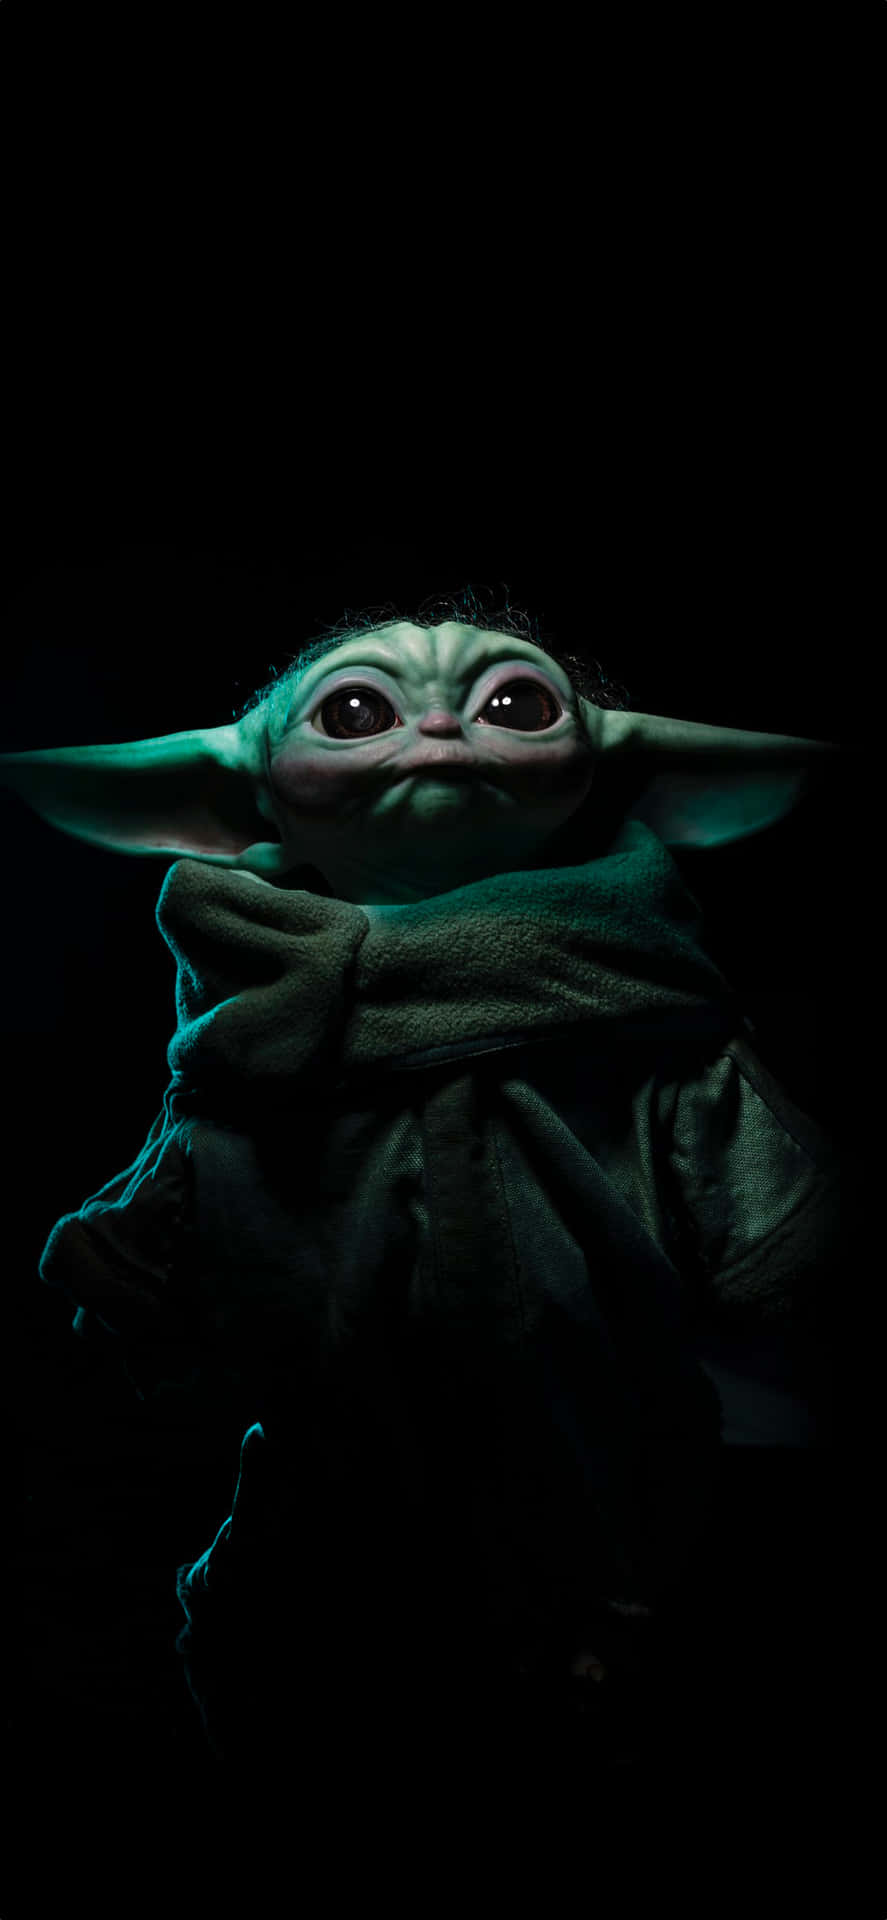 Mostraai Tuoi Amici Di Essere Il Più Grande Fan Di Baby Yoda Con Questa Fantastica Immagine Per Sfondo Dell'iphone. Sfondo